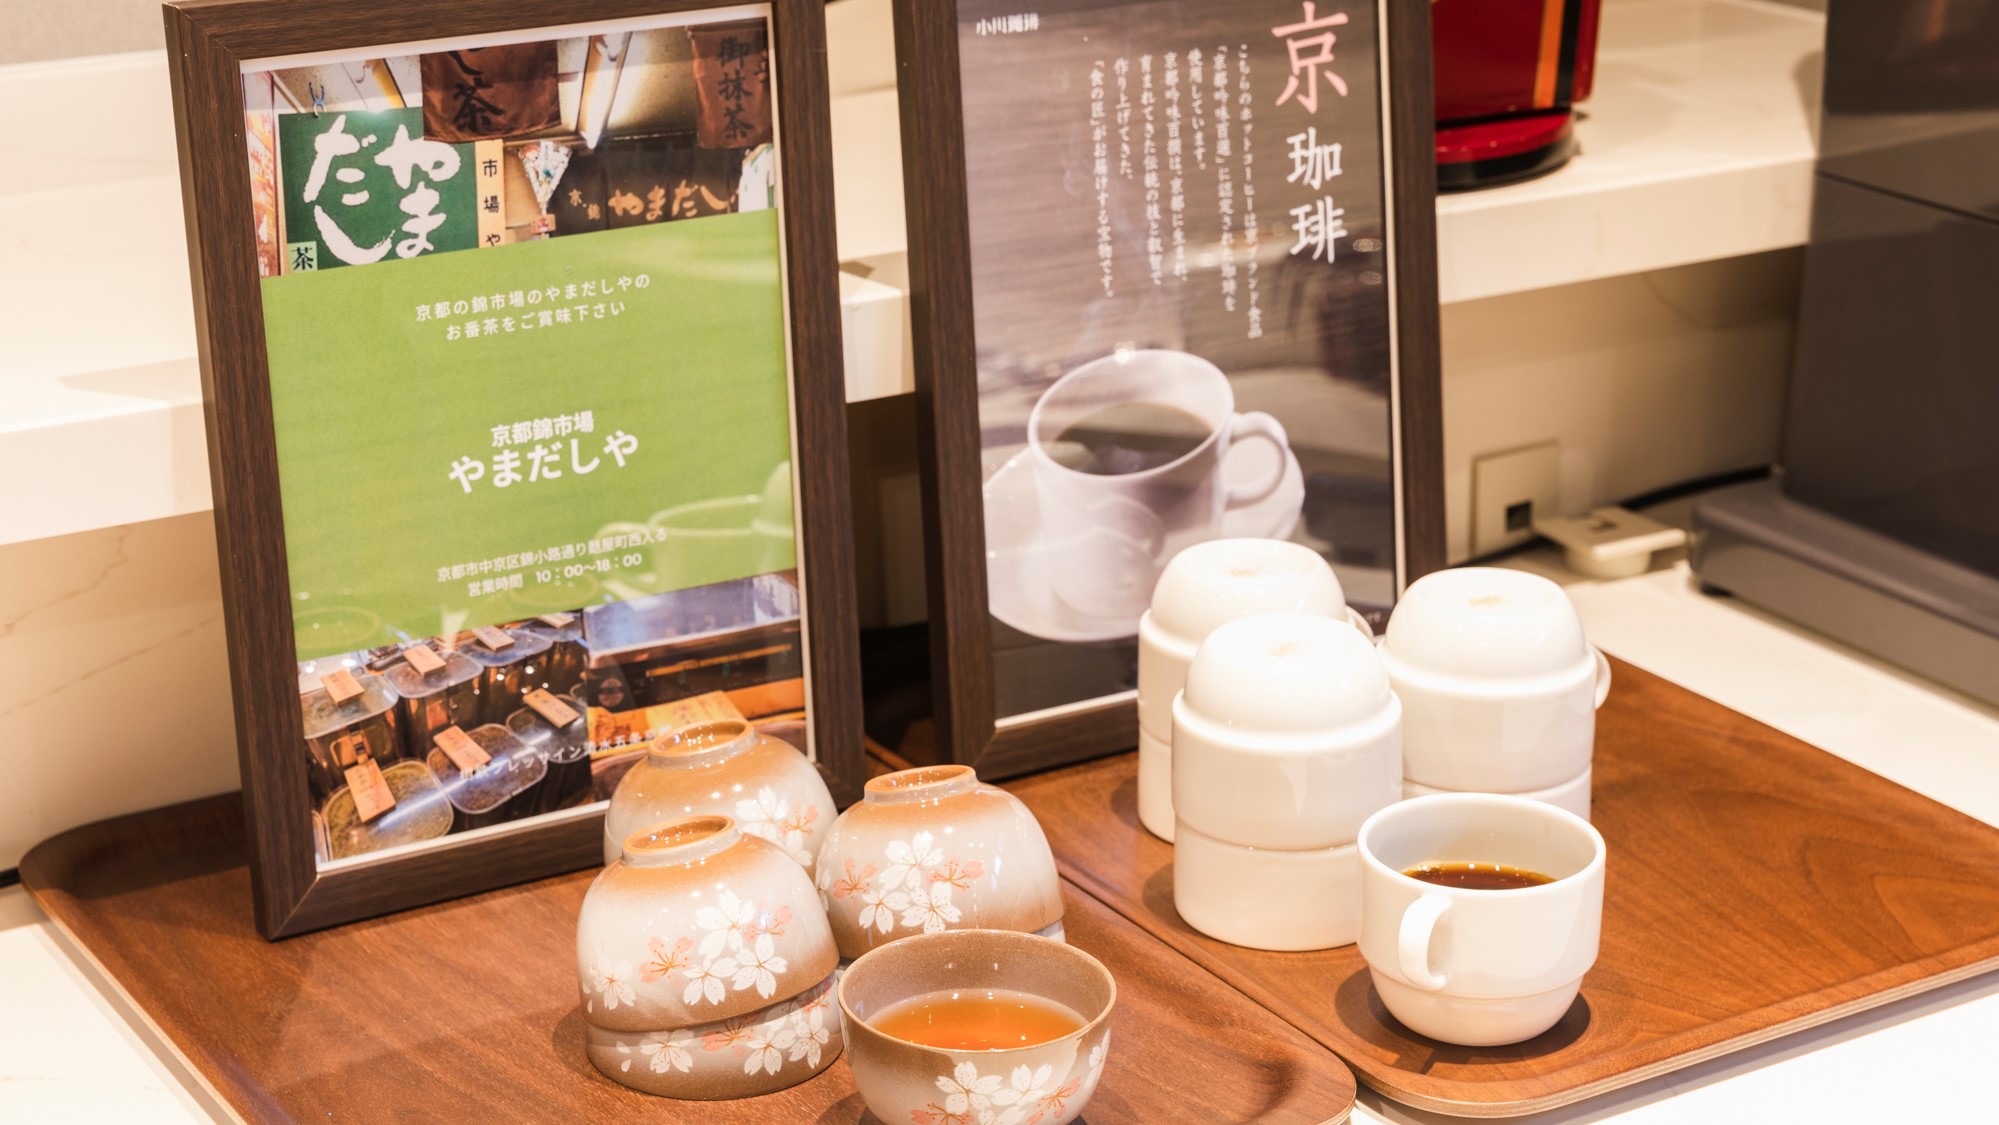 京都で有名な小川珈琲や錦市場から取り寄せているお番茶もご用意。